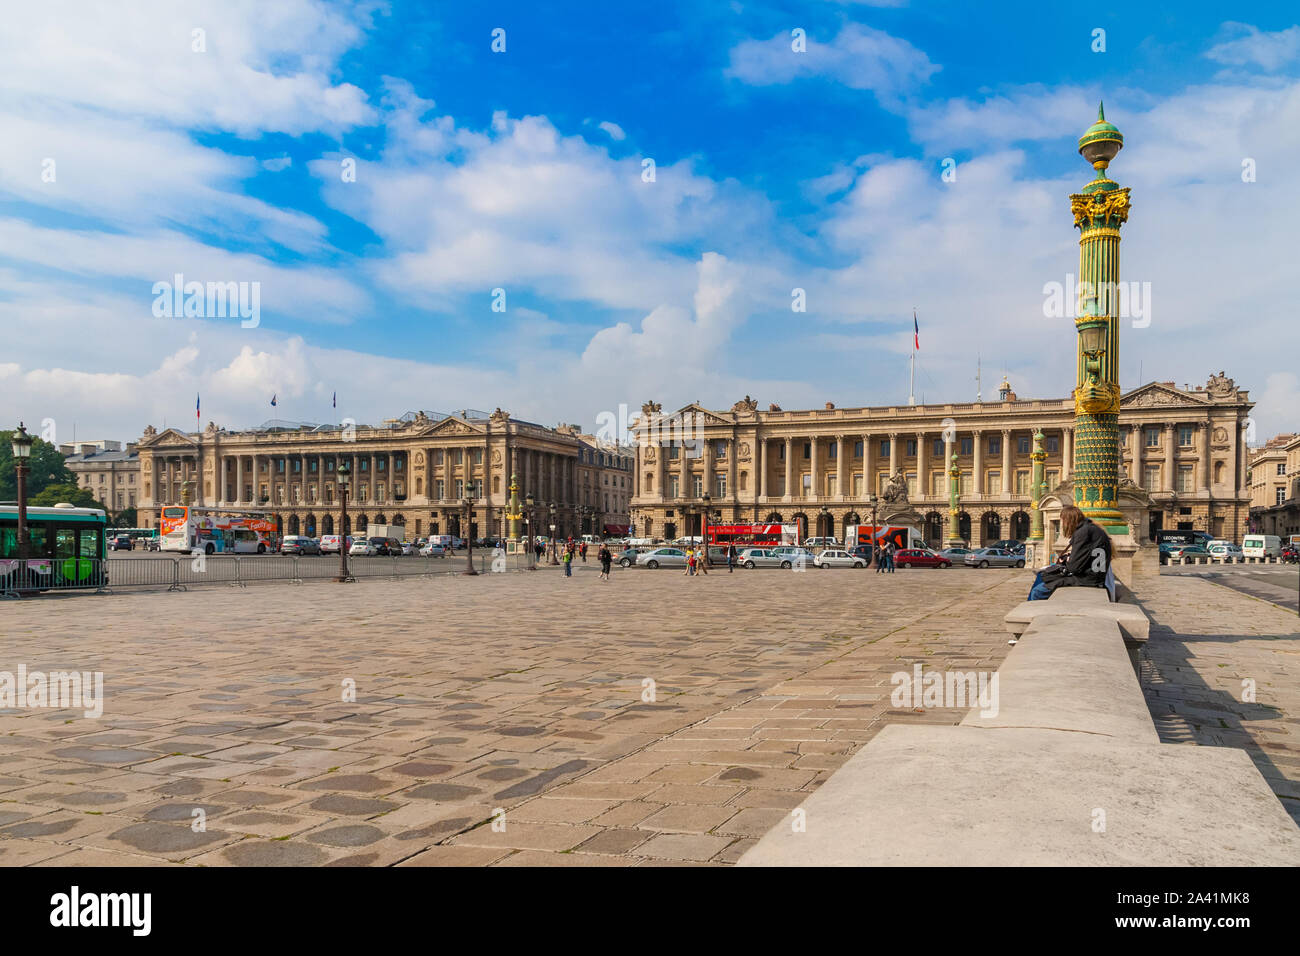 Belle vue panoramique sur la célèbre place publique Place de la Concorde à Paris avec les deux pierres identiques et de la rue des palais Royal dans l'arrière-plan. Banque D'Images